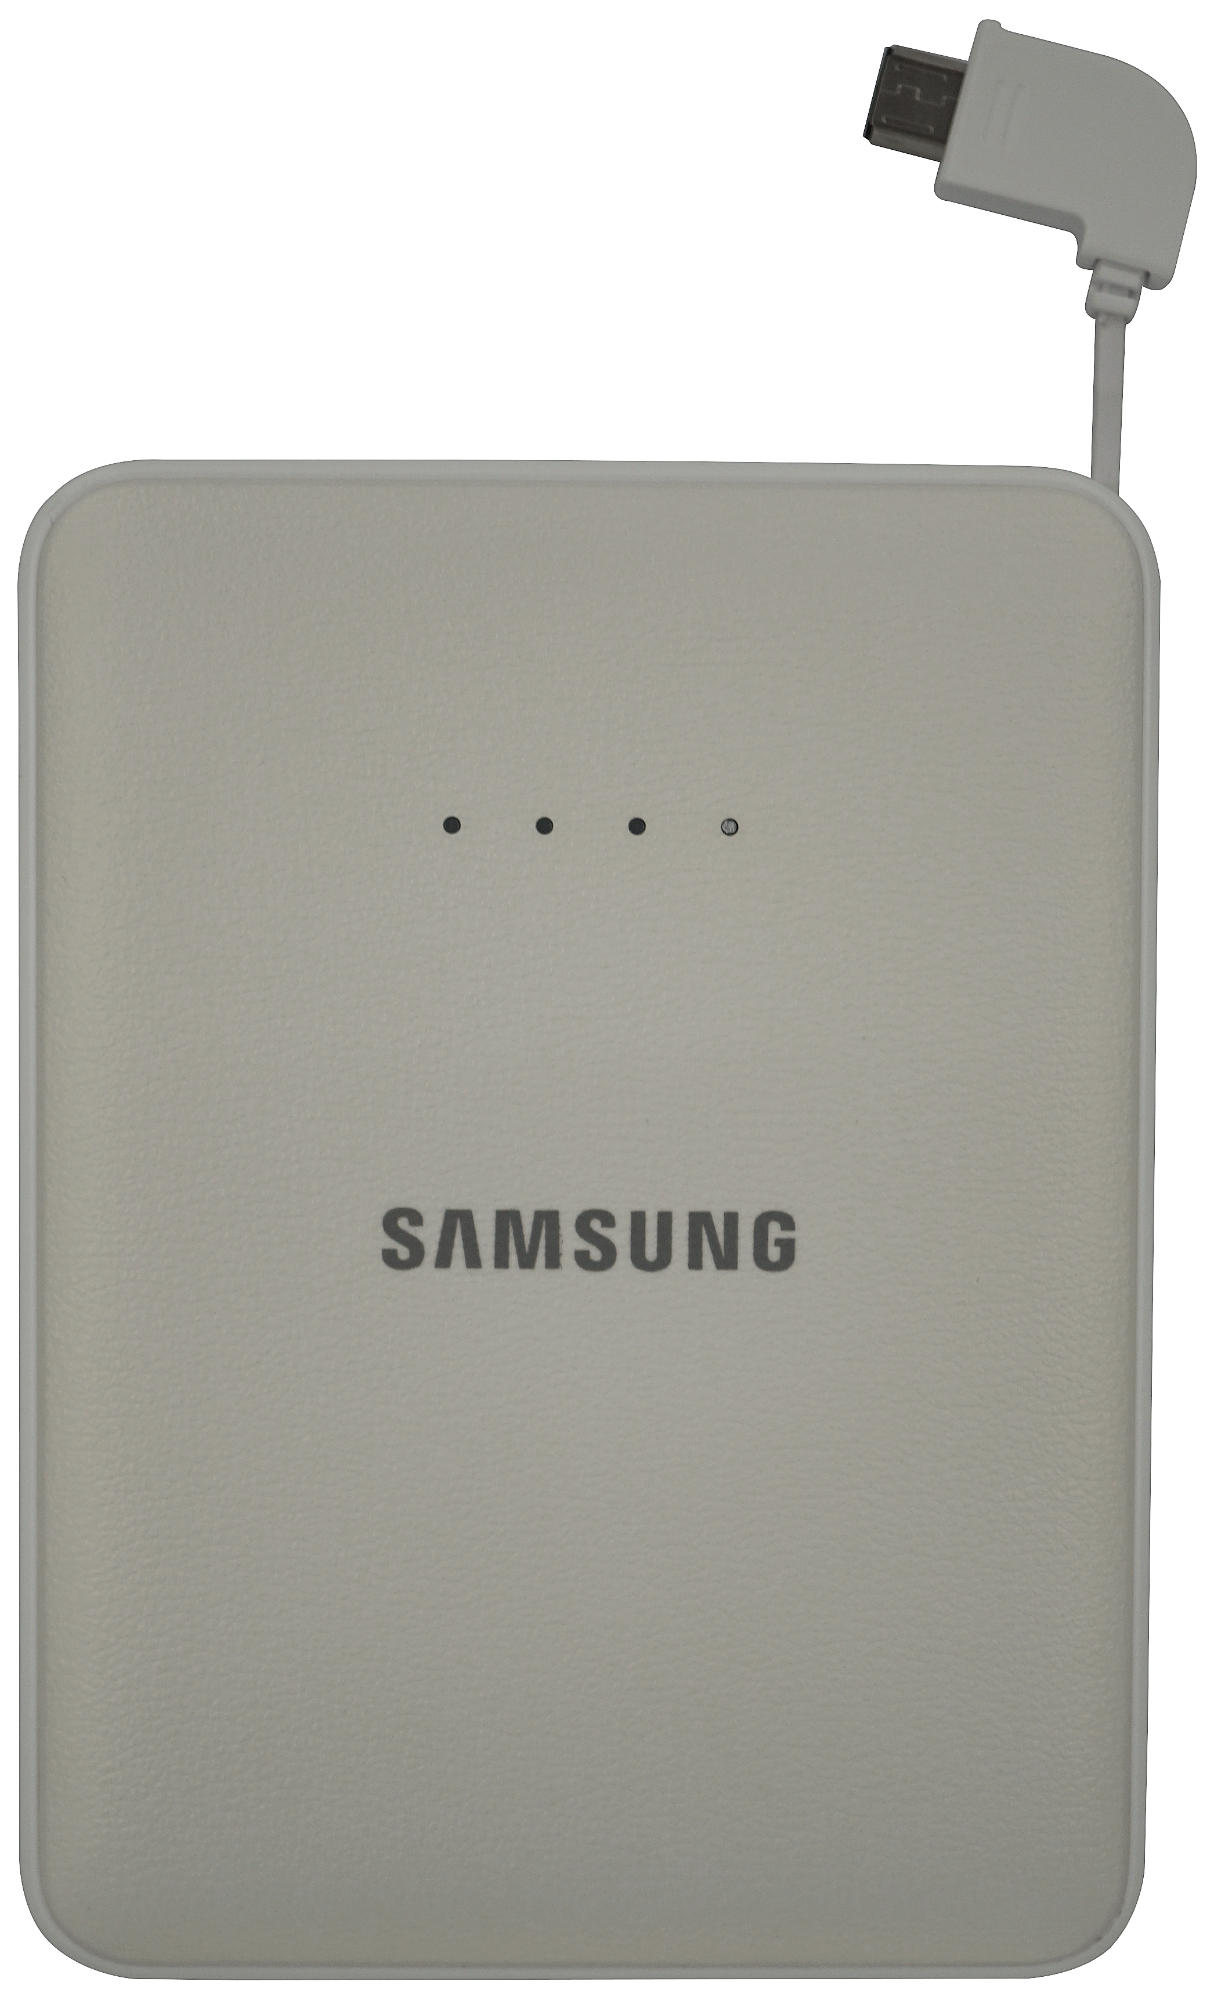 Samsung Ebpg850bsegww Batería externa powerbank ebpg850 8400 mah 1 usb microusb plateado 8400mah ebpg850b 8.400 2